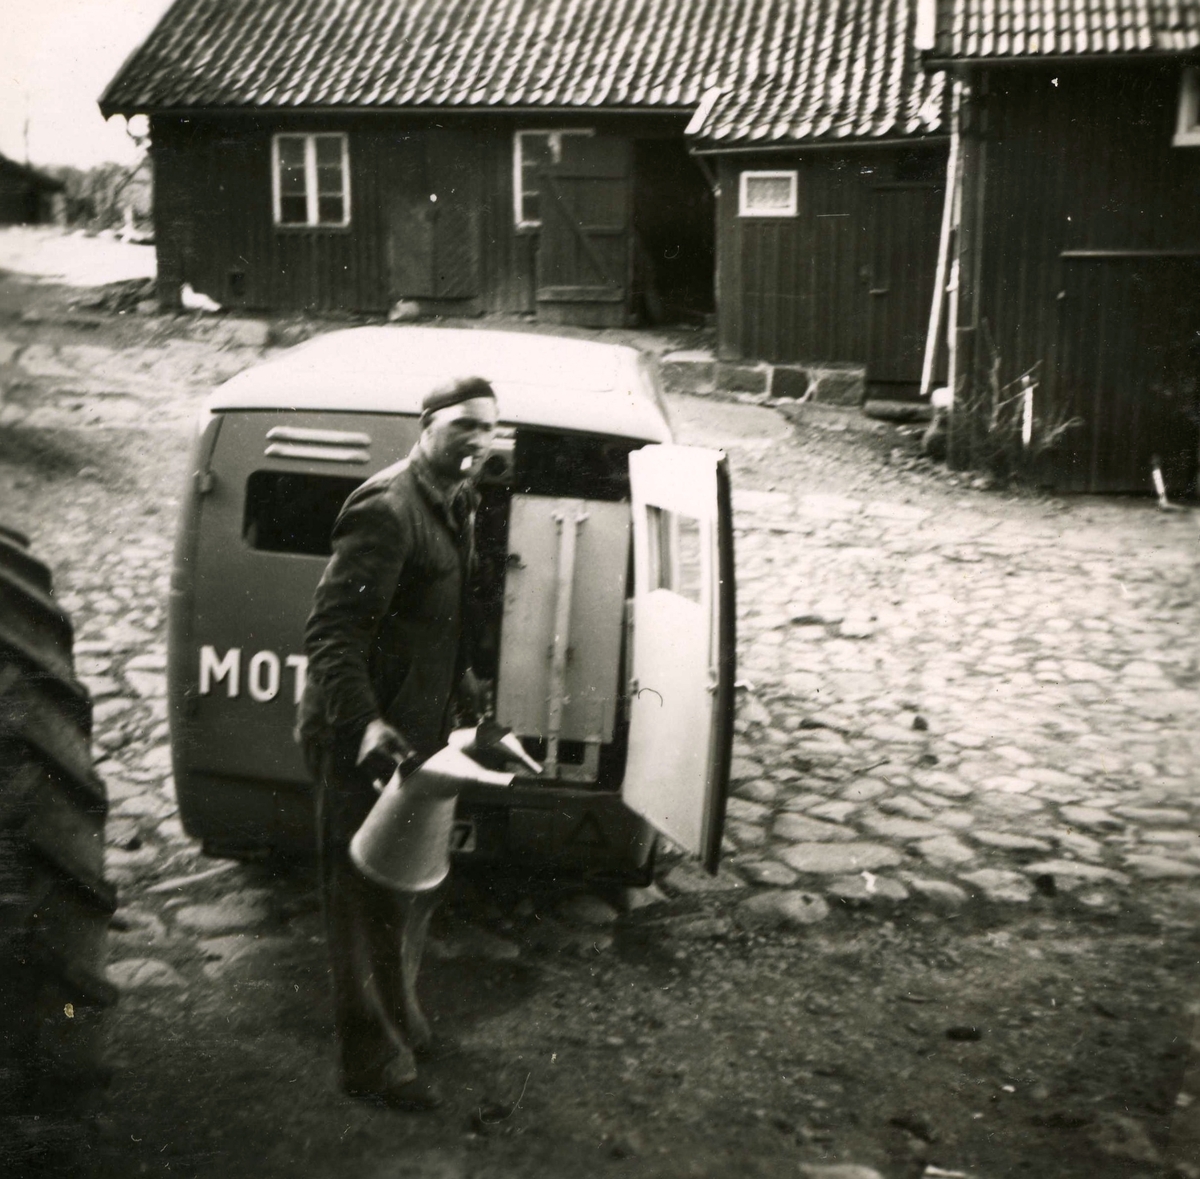 Gårdsplanen vid Ekans gård, Ekan 1:1 år 1953. Traktorreparatören Malte med en cigarett i munnen och en oljekanna i handen. 
Relaterat motiv: A1147.